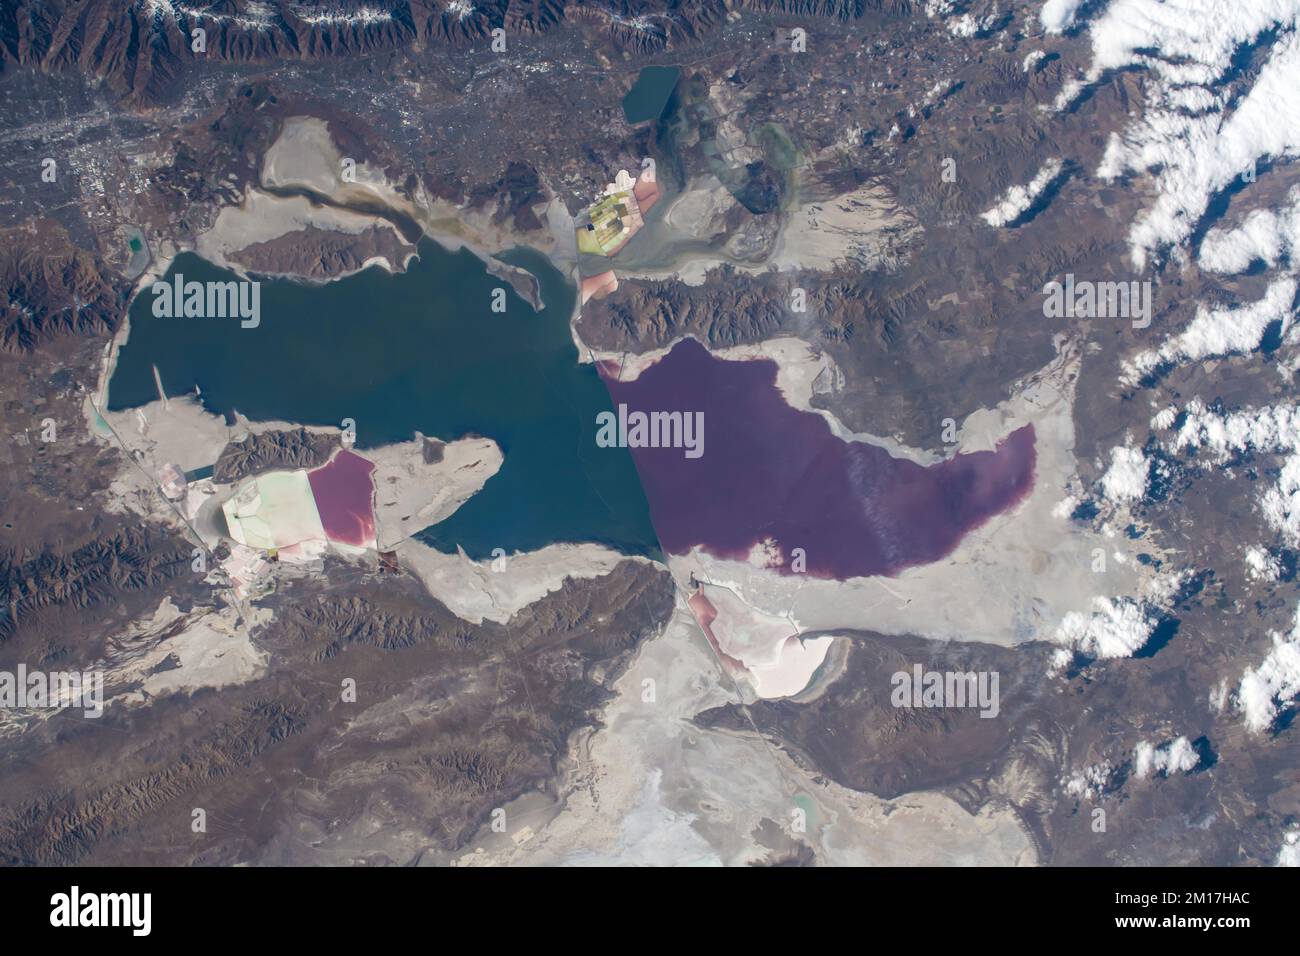 Vue aérienne de Great Salt Lake et Salt Lake City, Utah. Les lacs présentent des eaux de différentes couleurs. Amélioration numérique. Éléments d'image fournis par la NASA Banque D'Images